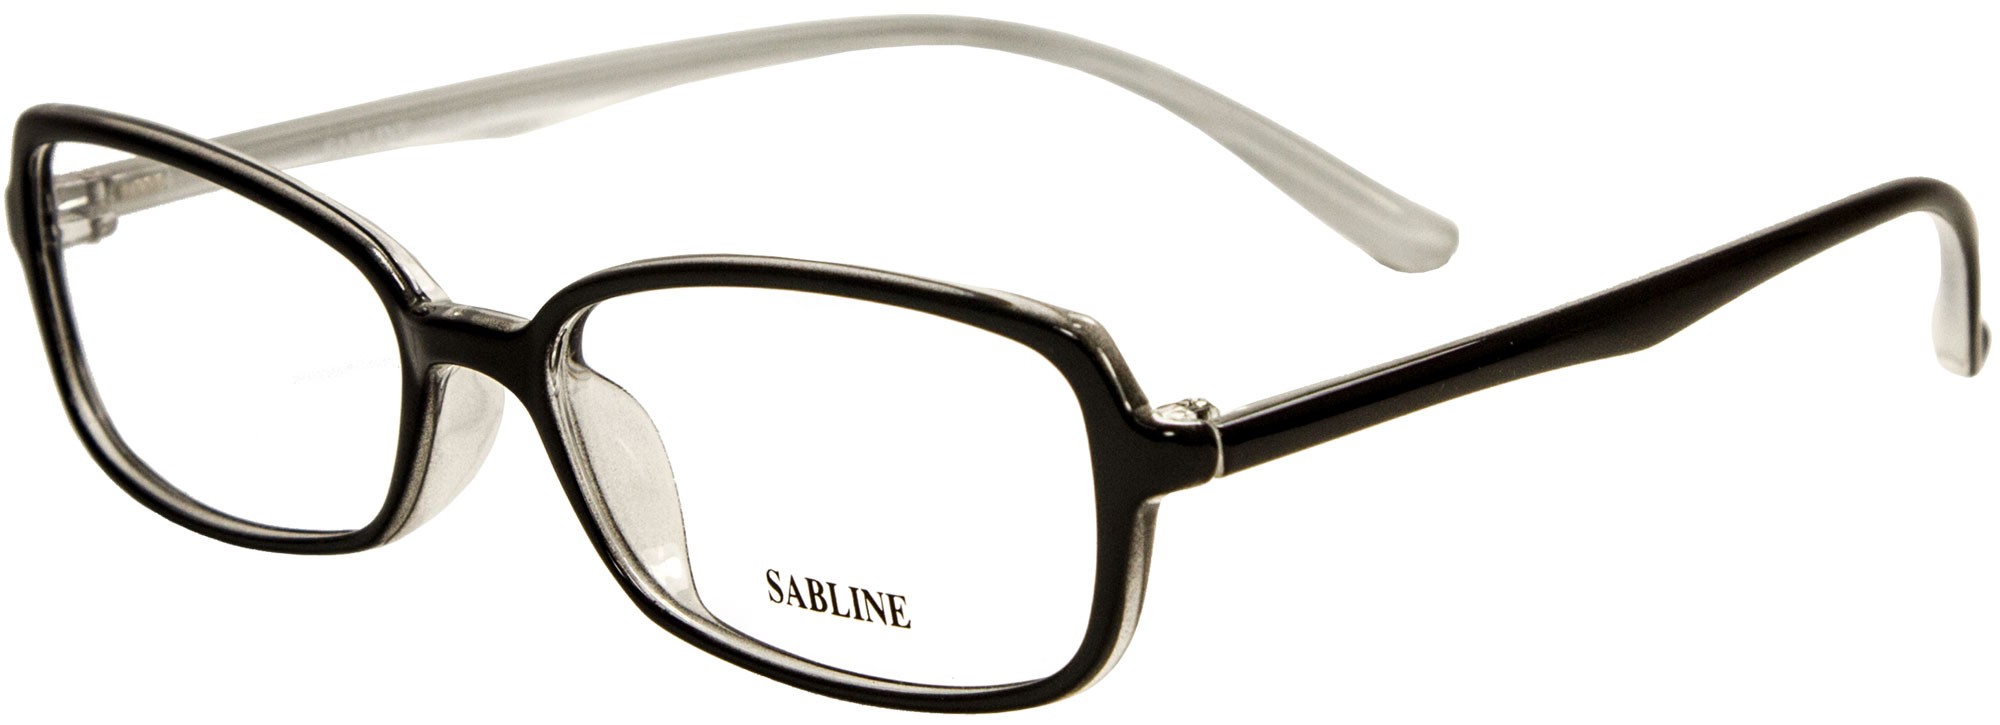 Sabline 9401 C6-1 2